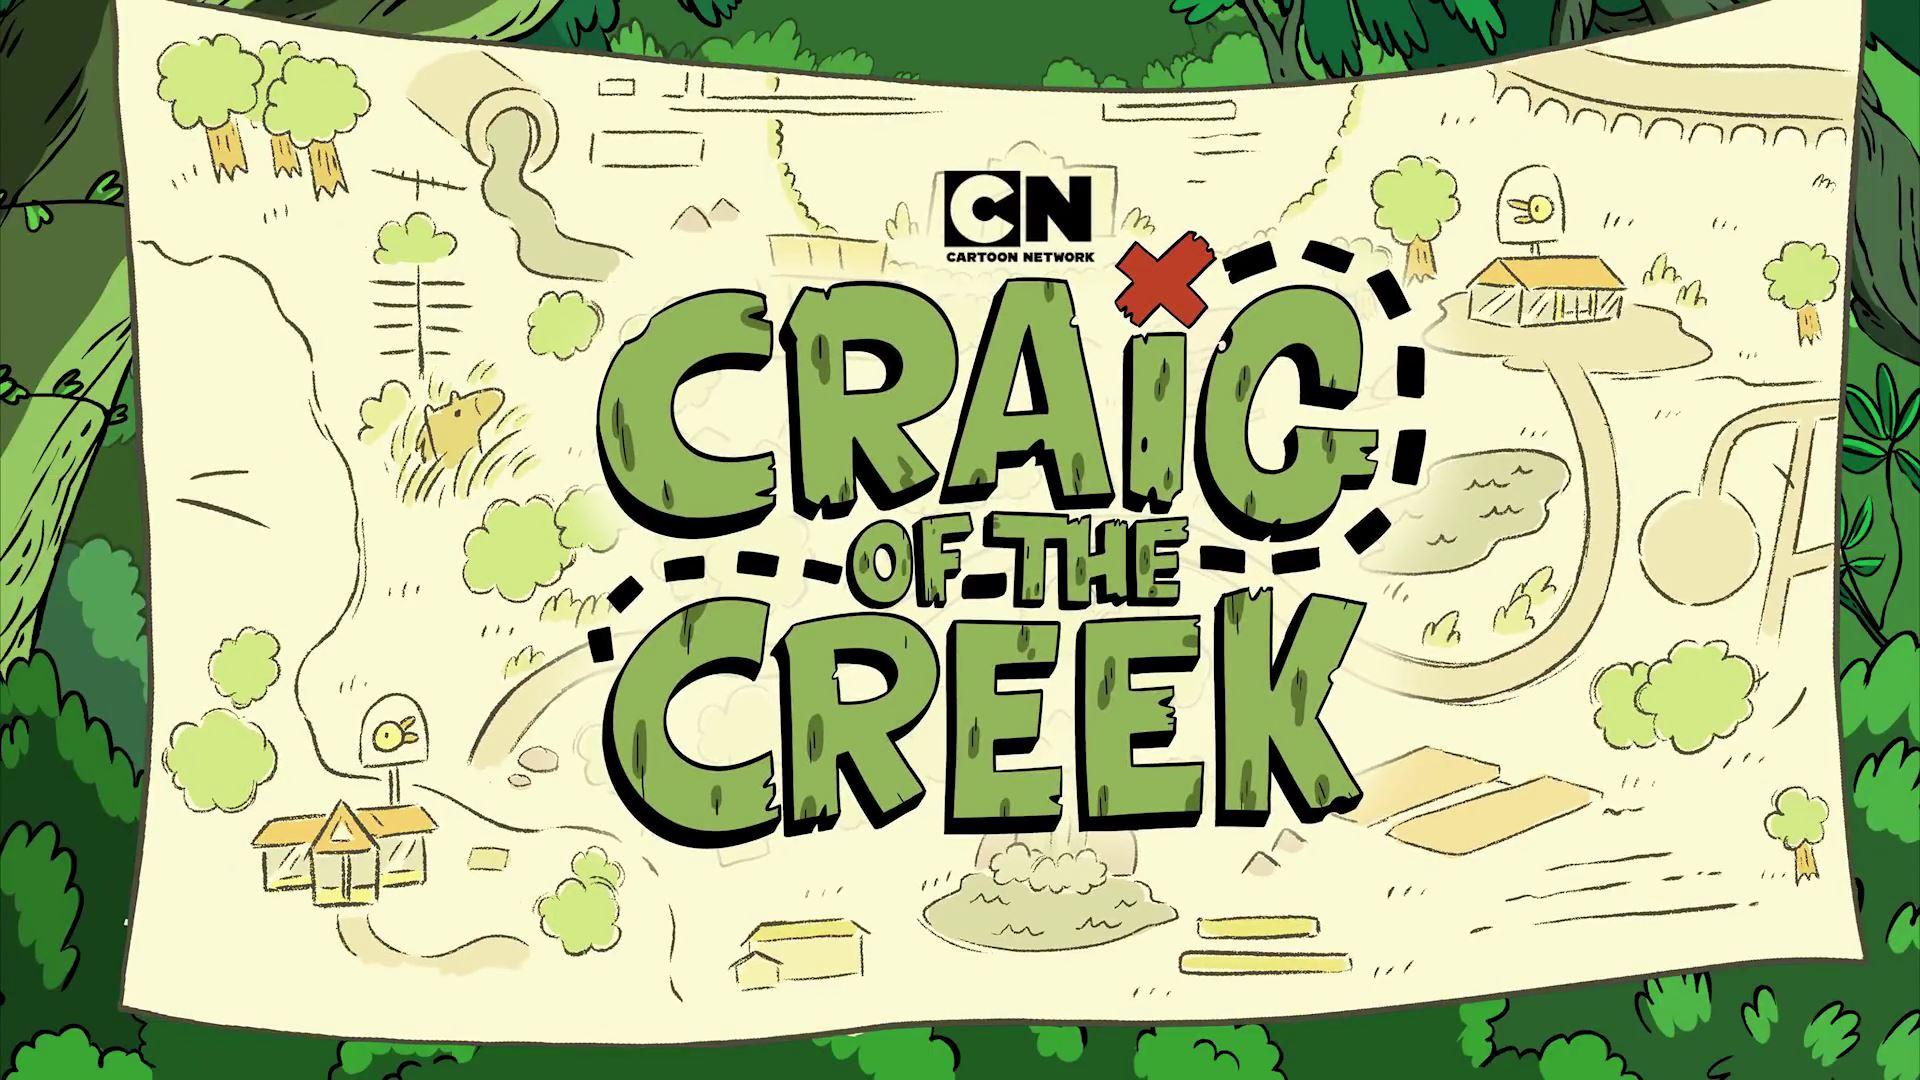 کریگ کریک (Craig of the Creek)